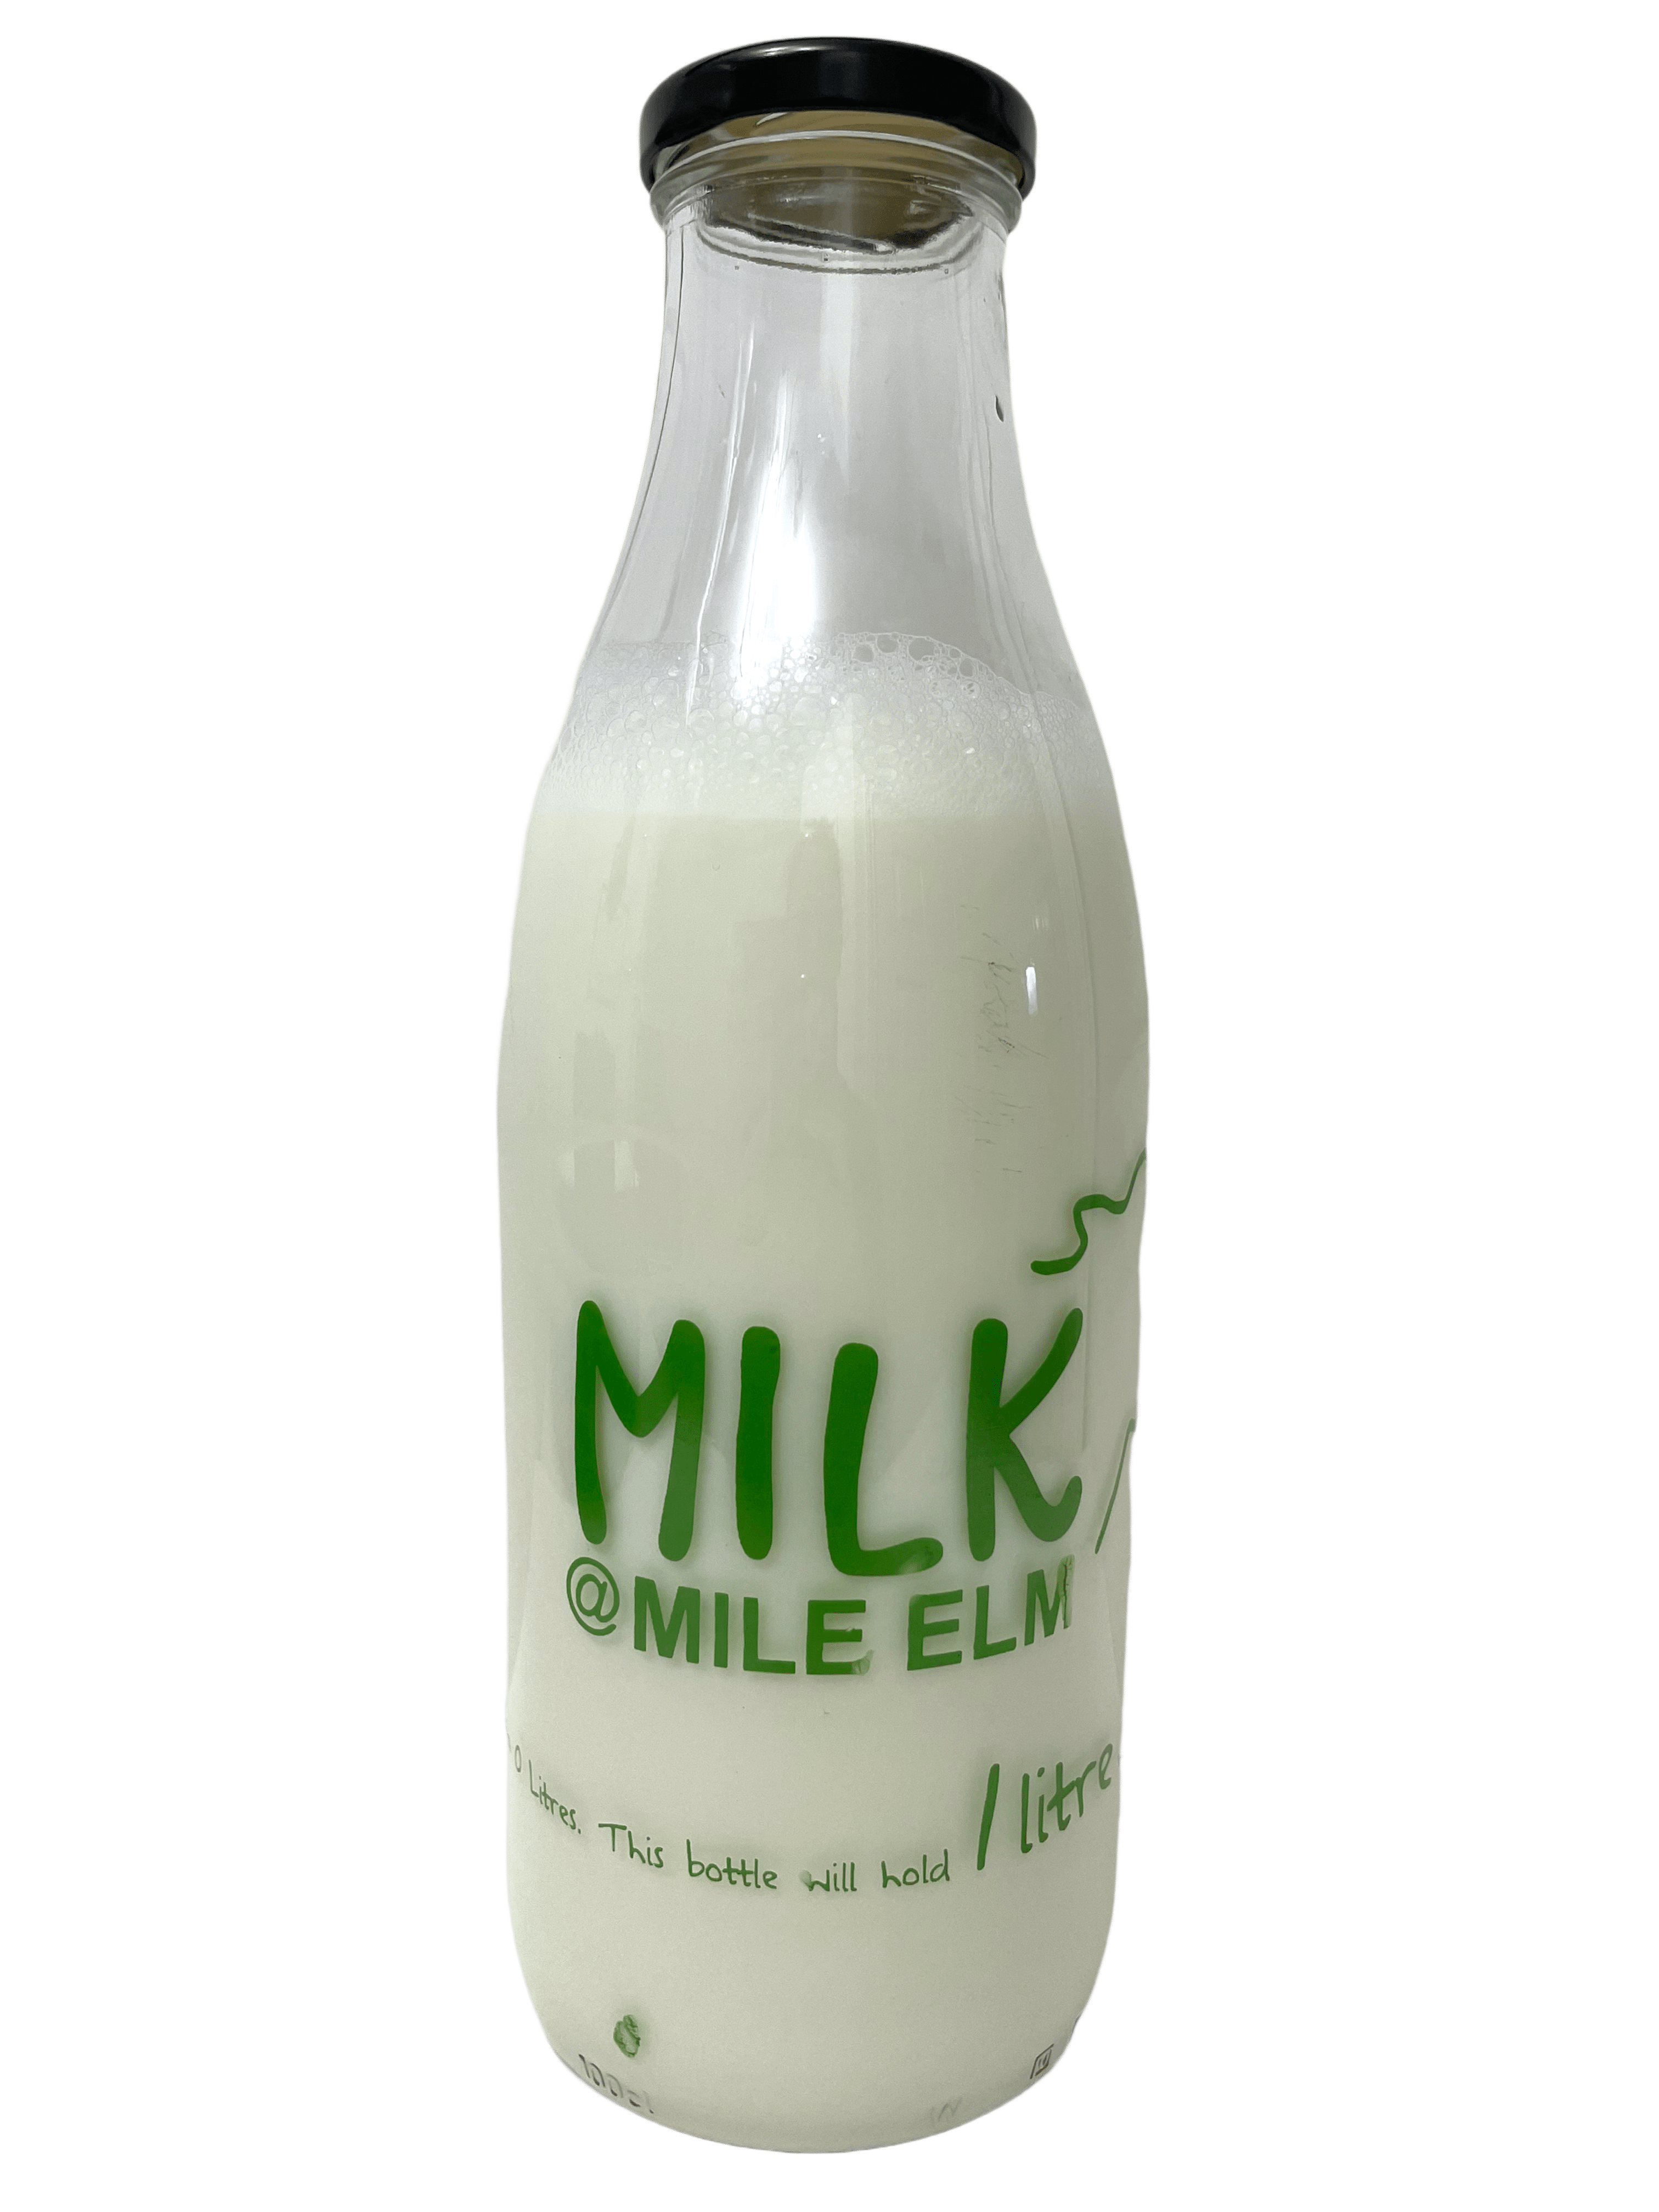 Milk@Mile Elm - Kelis.info